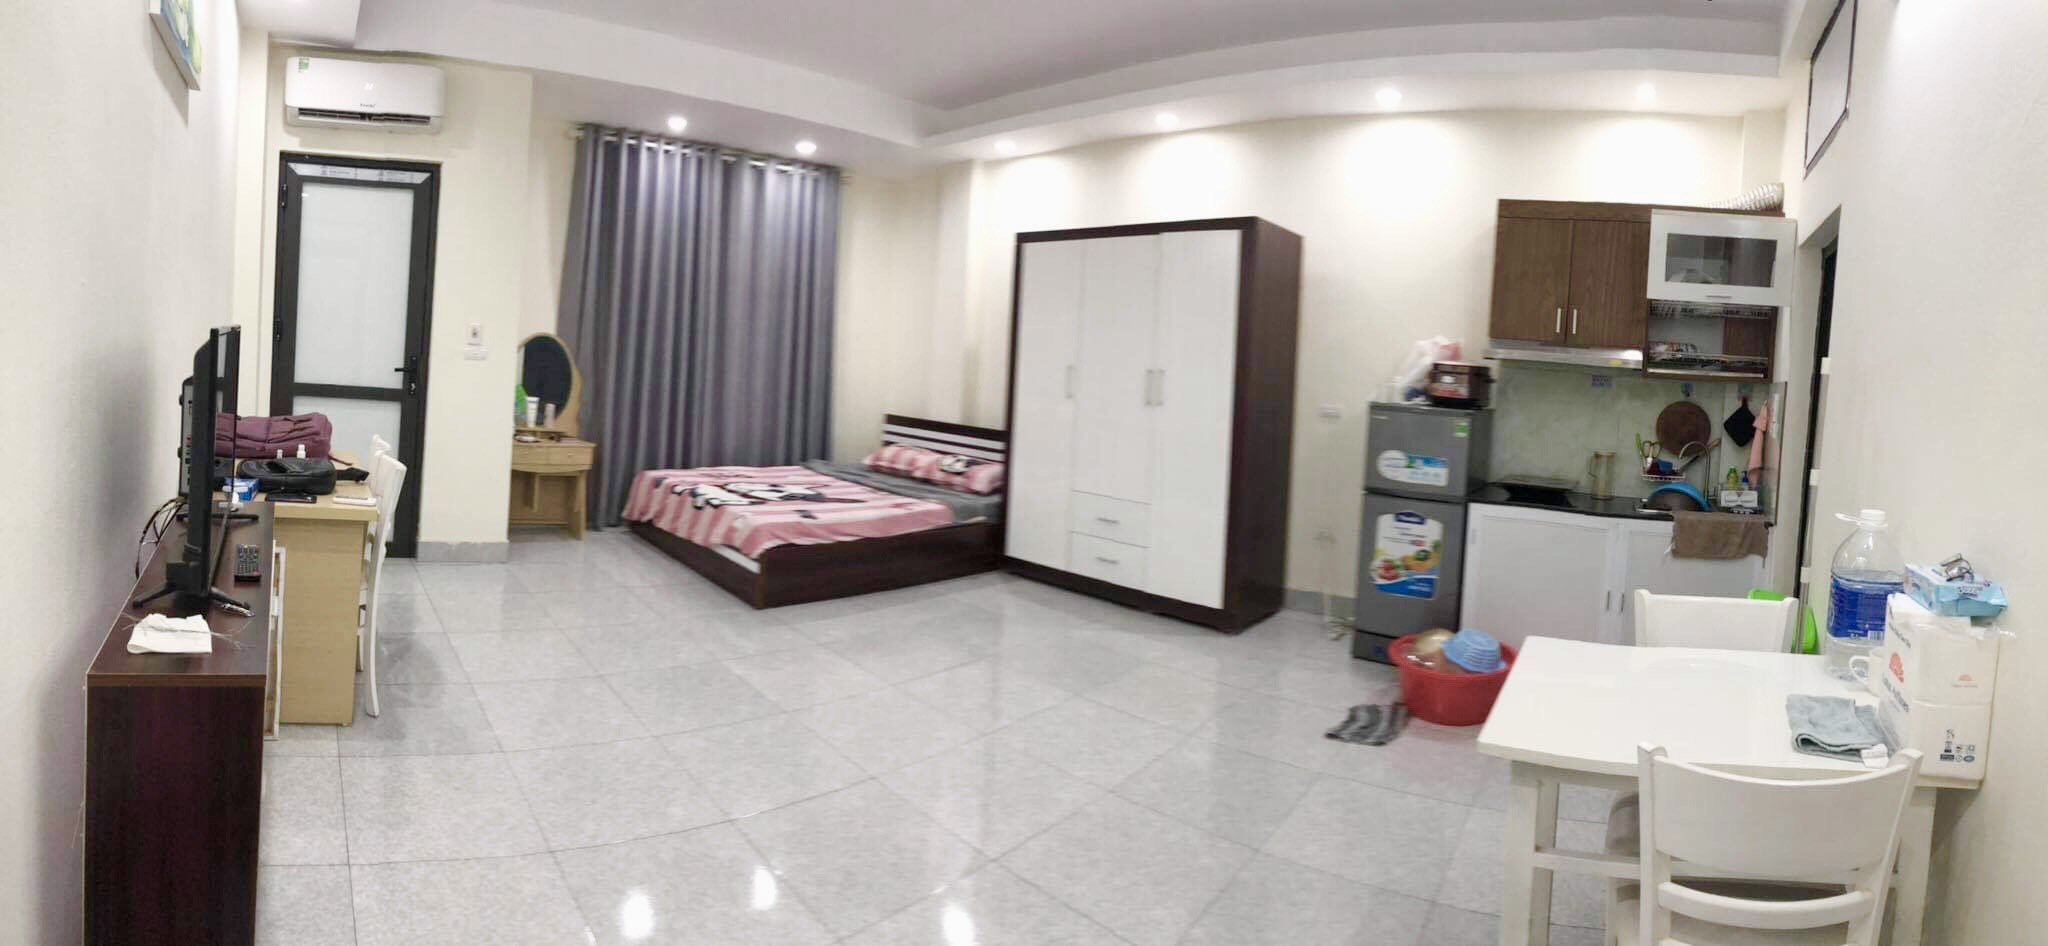 Cần nhượng căn hộ chung cư mini diện tích 30m2 full đồ tại Ngõ 4 Đồng